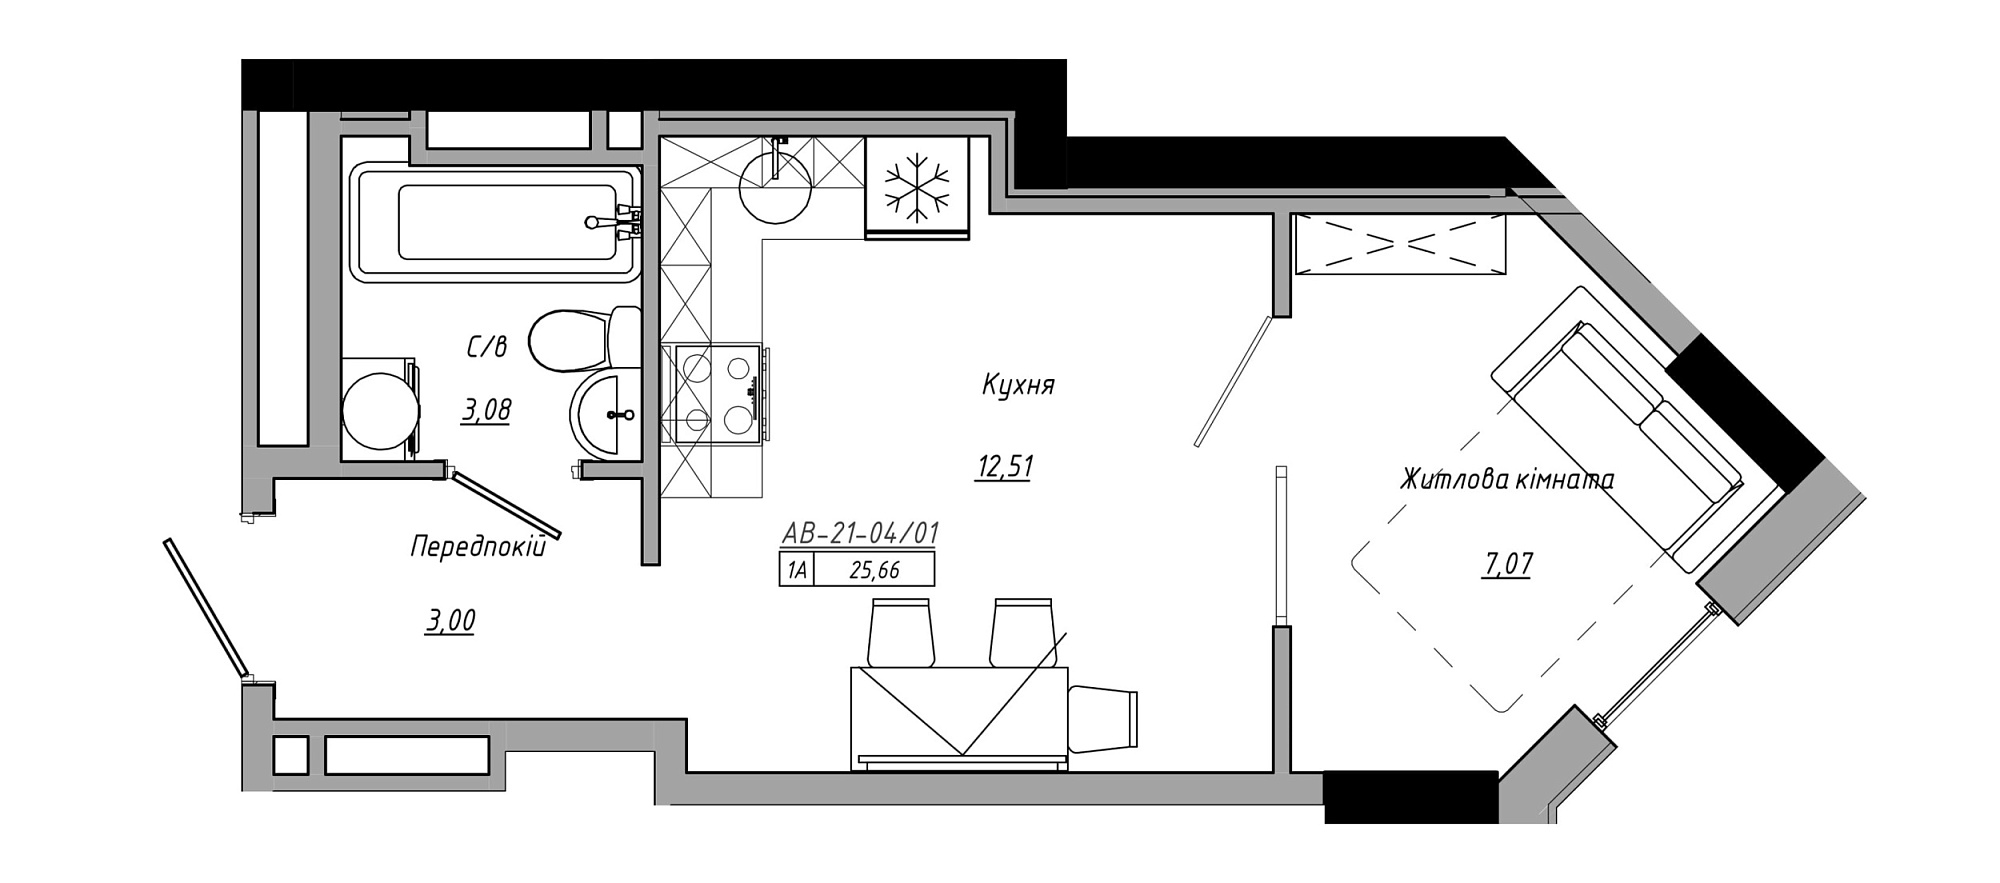 Планування 1-к квартира площею 25.66м2, AB-21-04/00001.